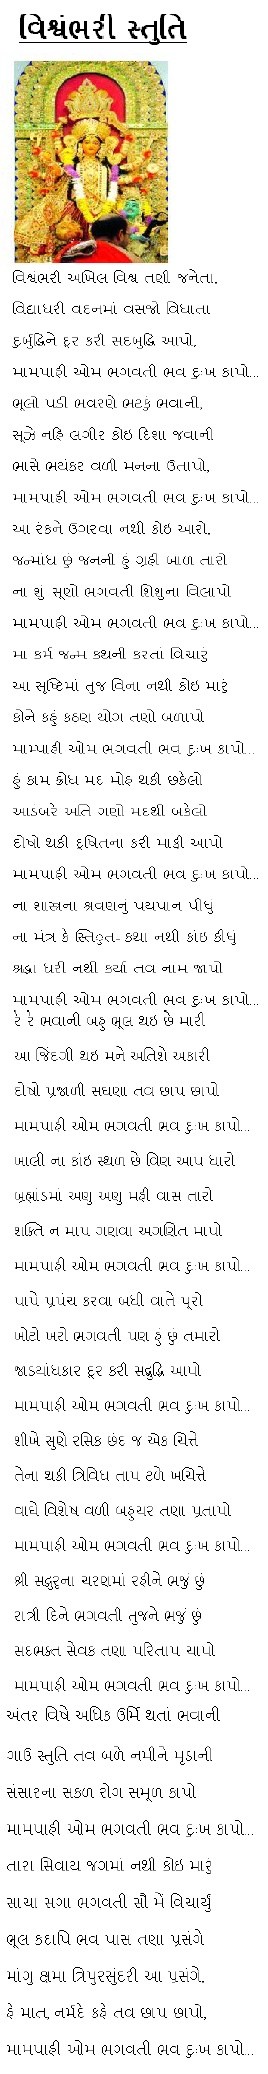 Vishwambhari Stuti Lyrics in Gujarati